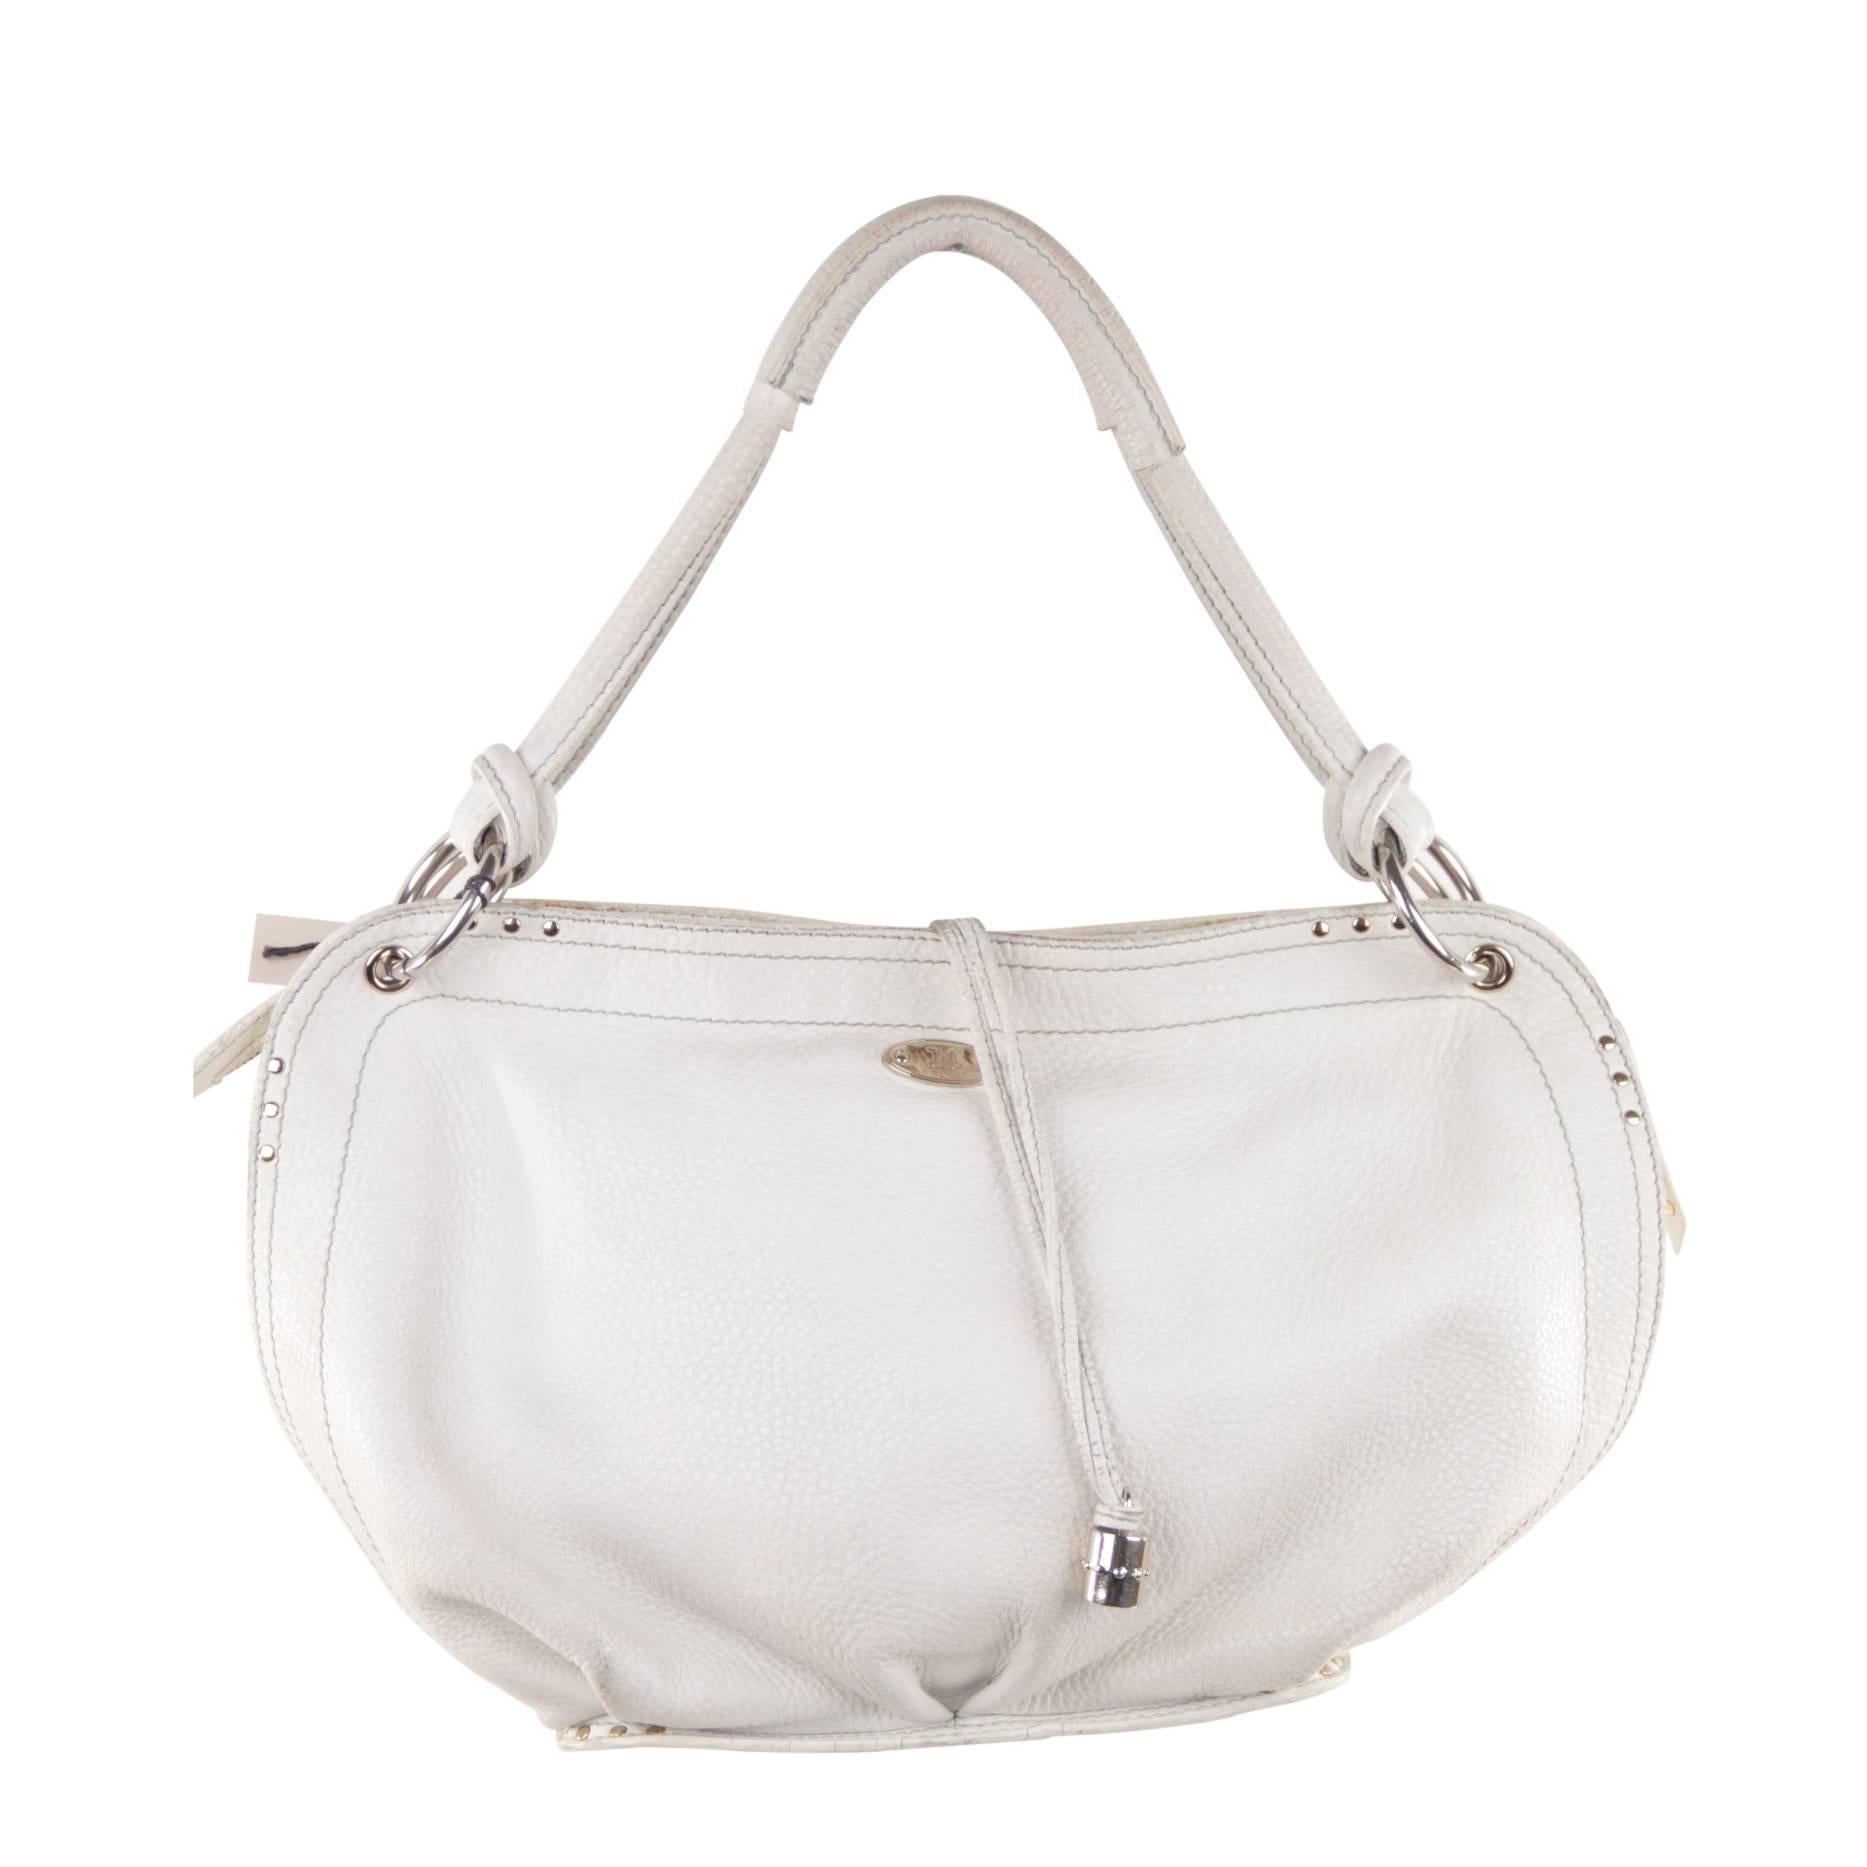 CELINE PARIS White Leather SHOULDER BAG Handbag TOTE w/ STUDS Detailing